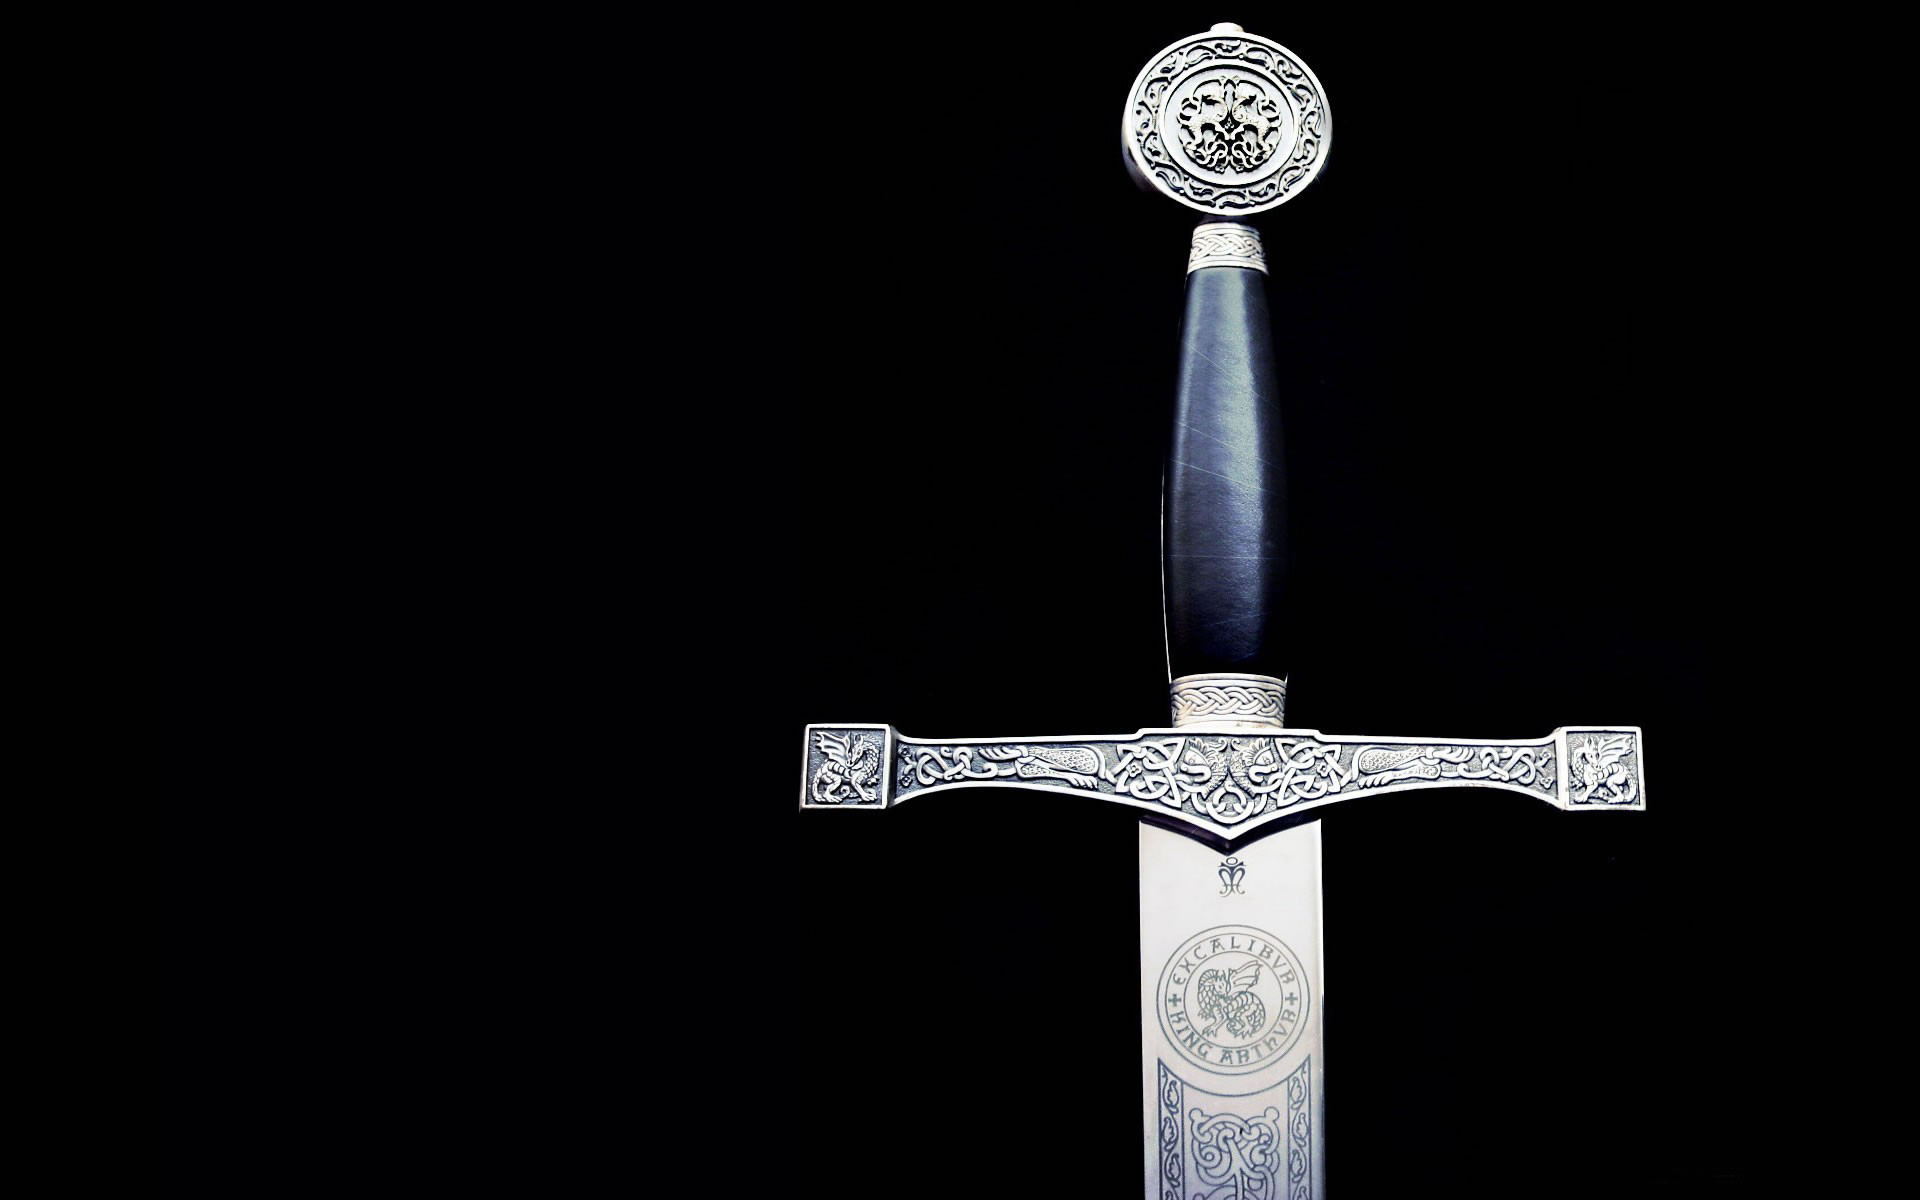 The sword, excalibur, king arthur, the legend